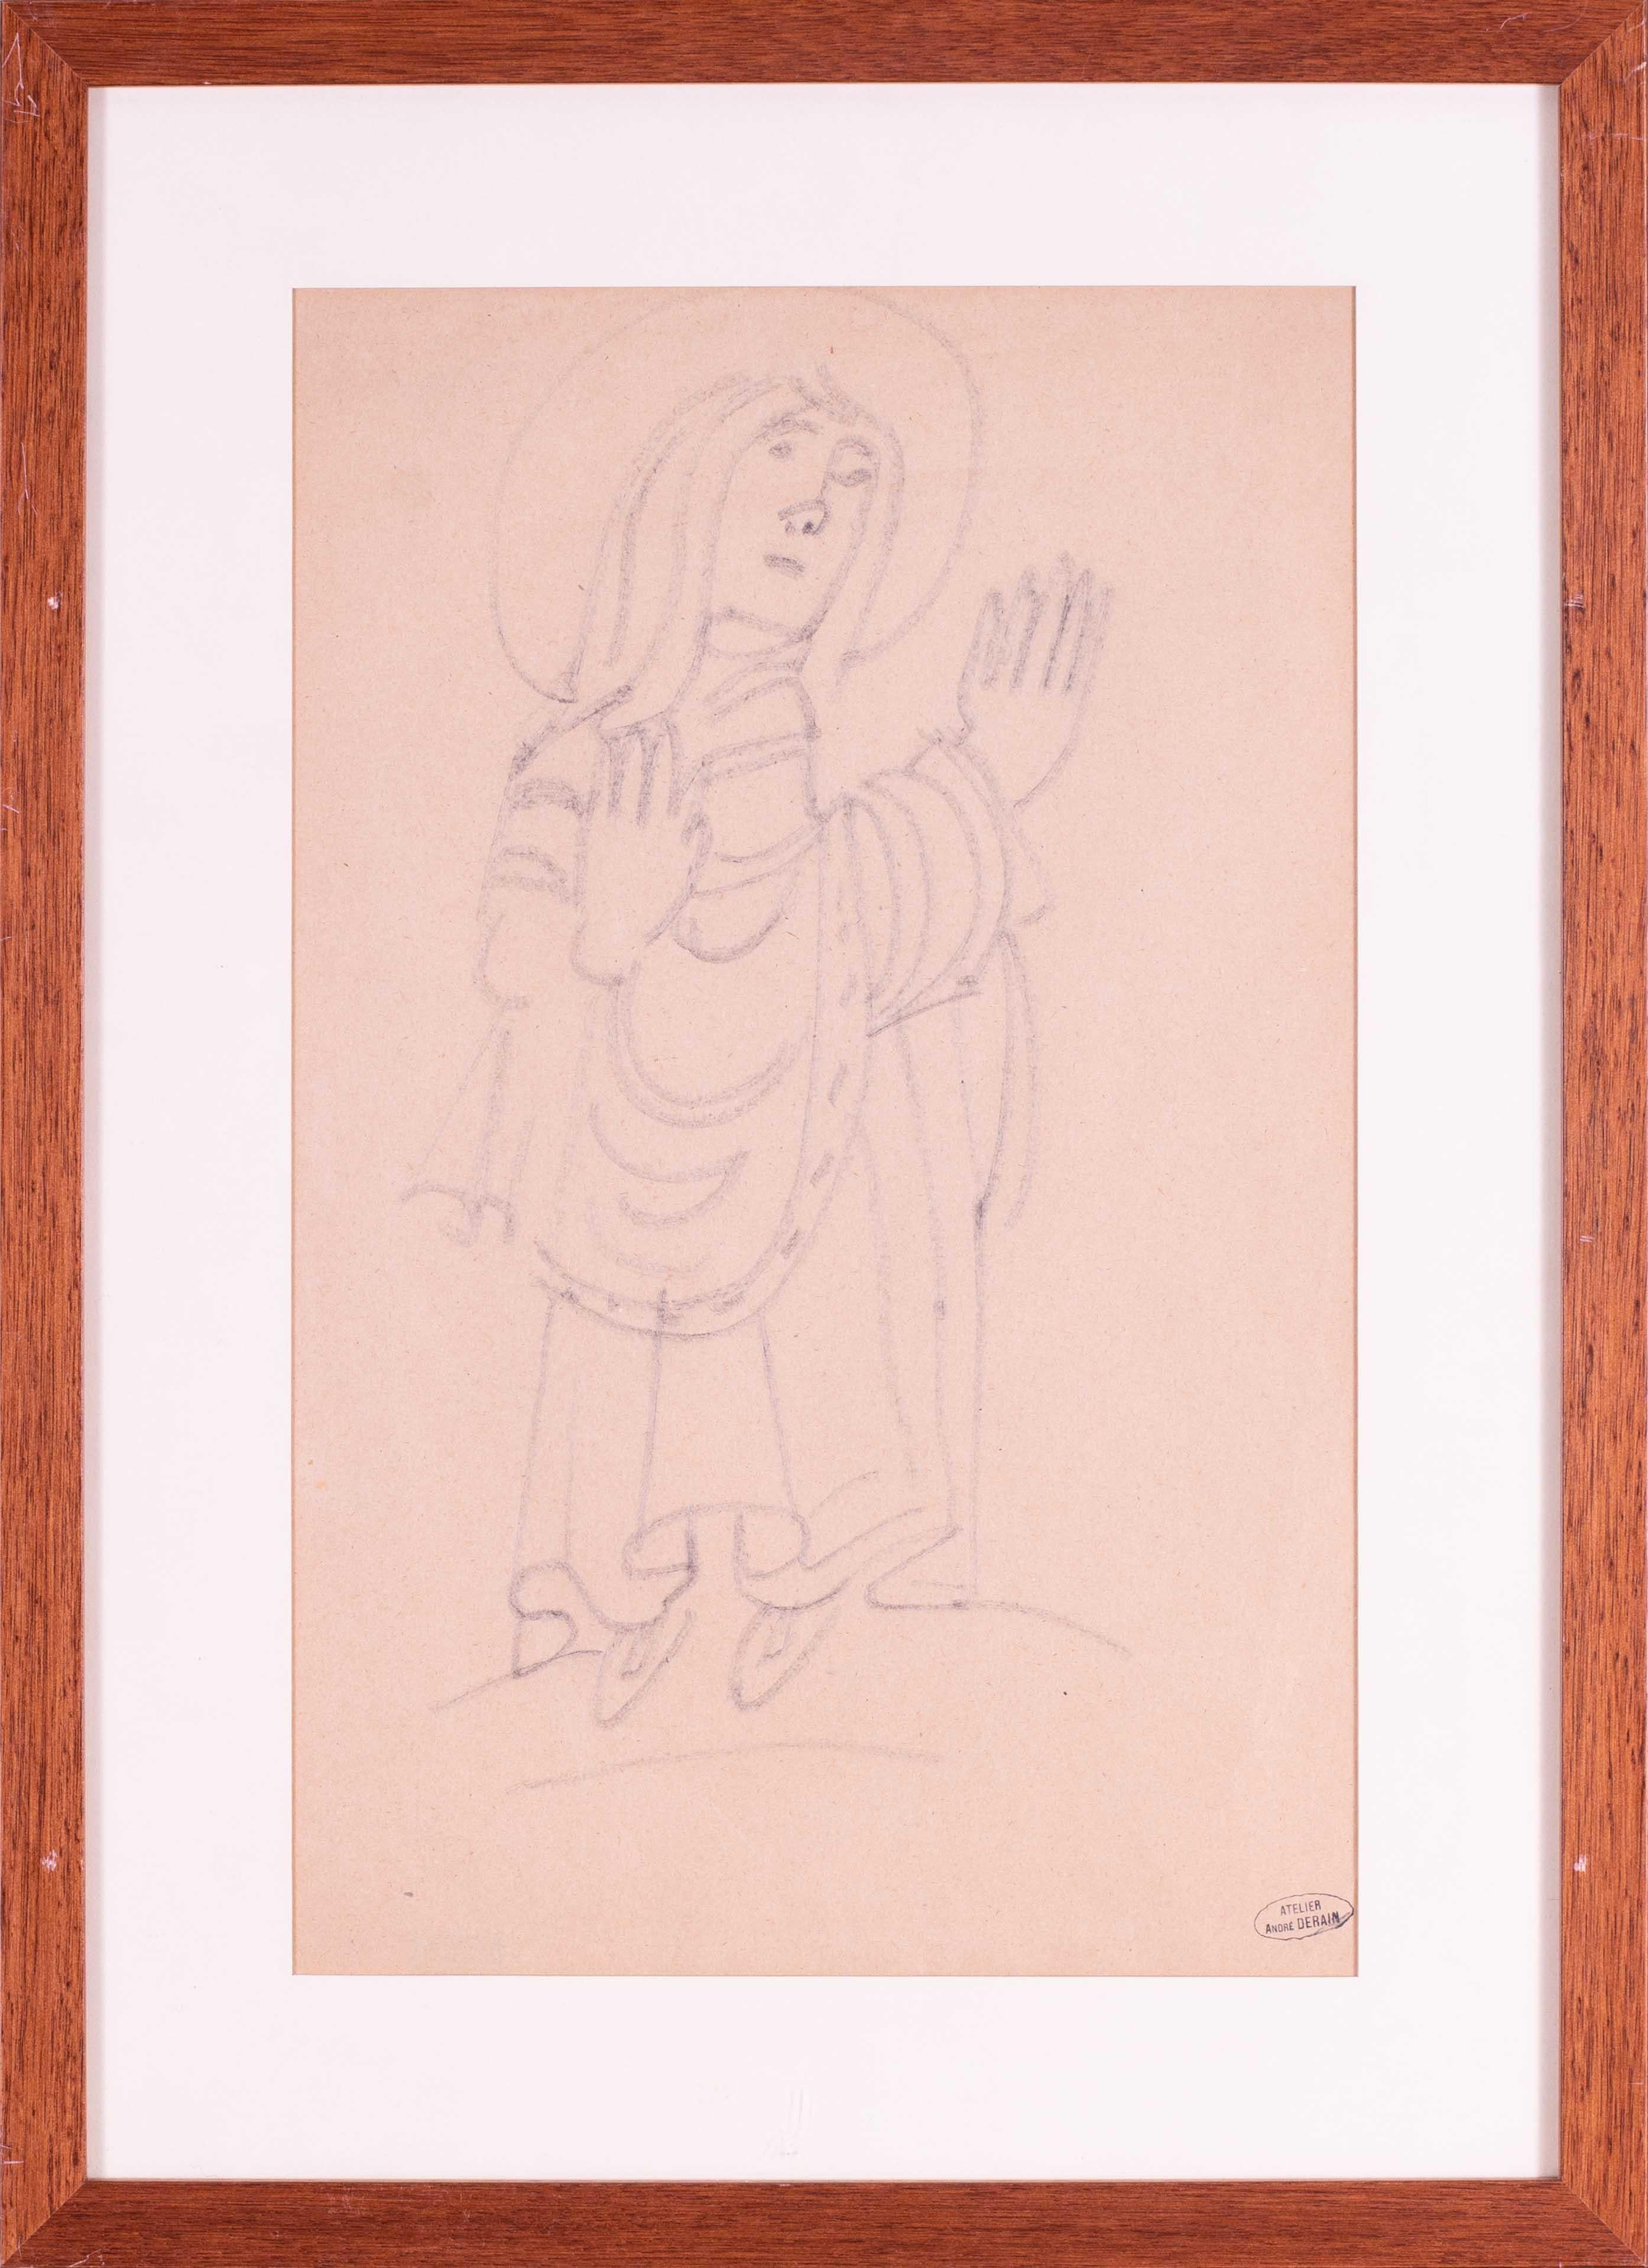 Figurative Art André Derain - Dessin fauve français du début du 20e siècle d'Andre Derain représentant un saint